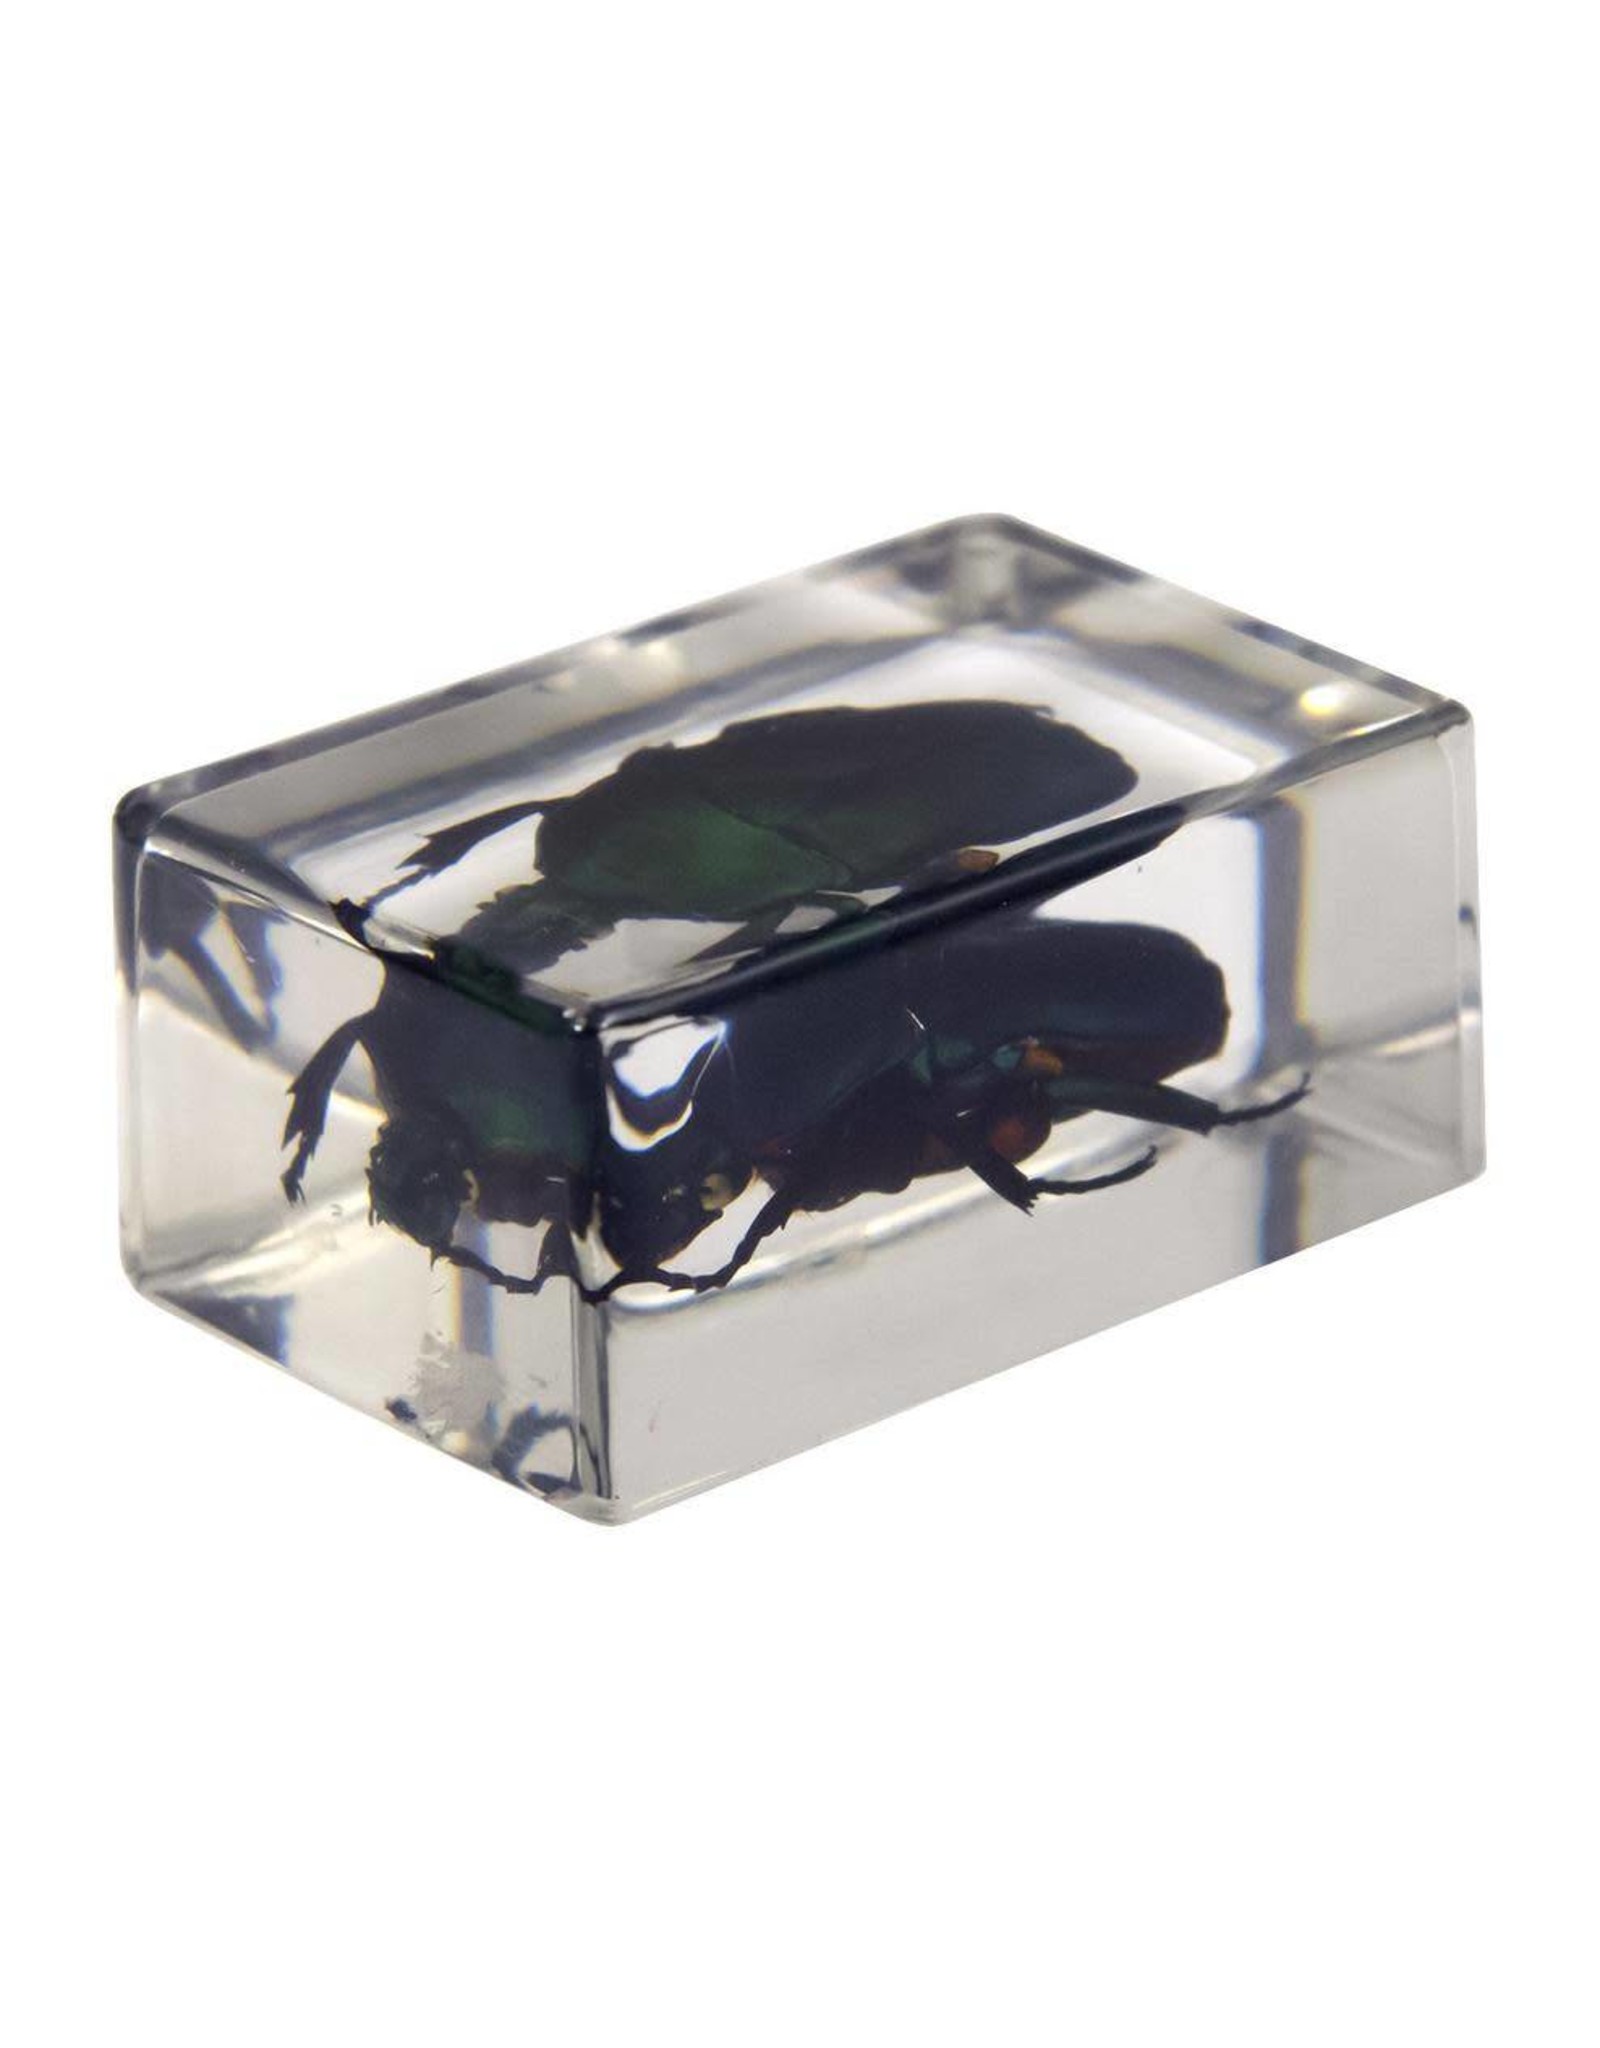 Celestron Celestron 3D Bug Specimen Kit #2 (Limited Quantities)